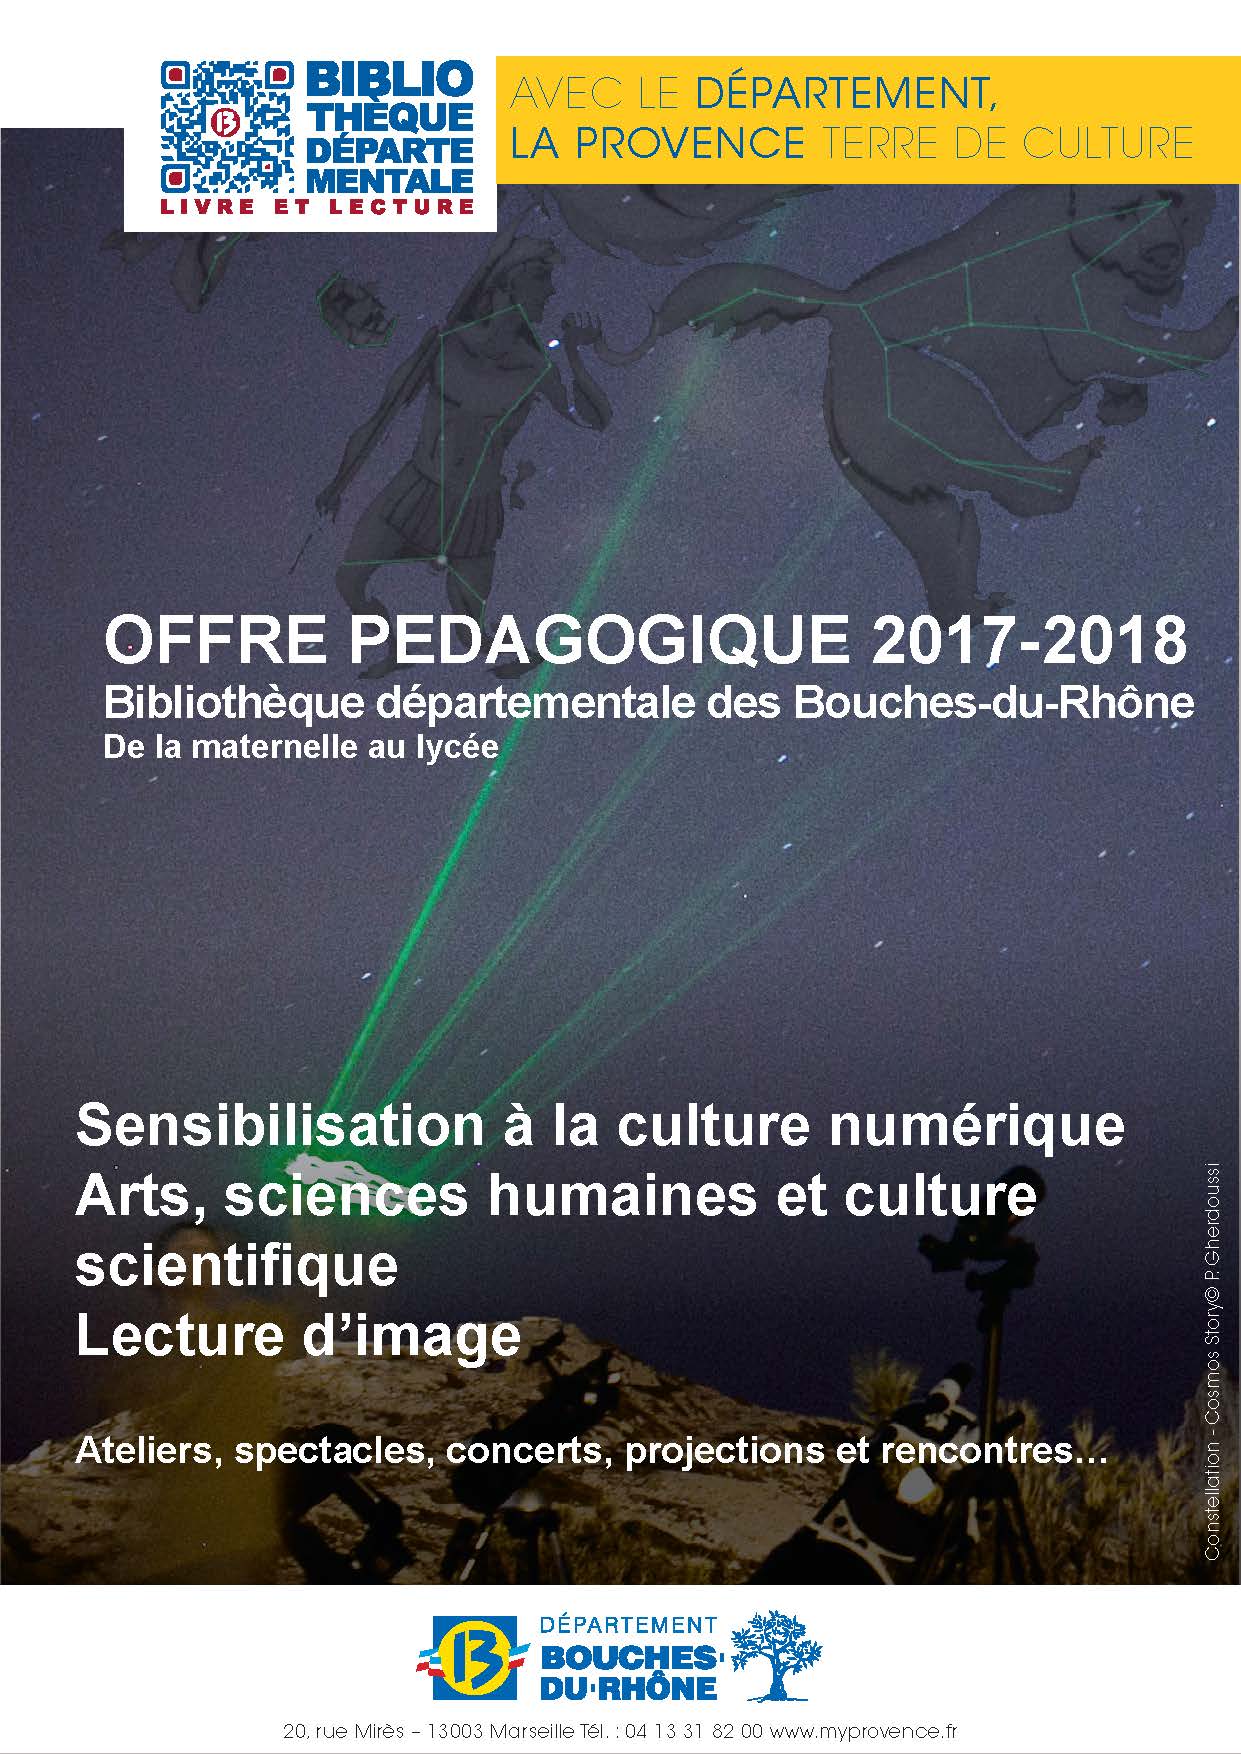 Offre pedagogique 2017-2018 